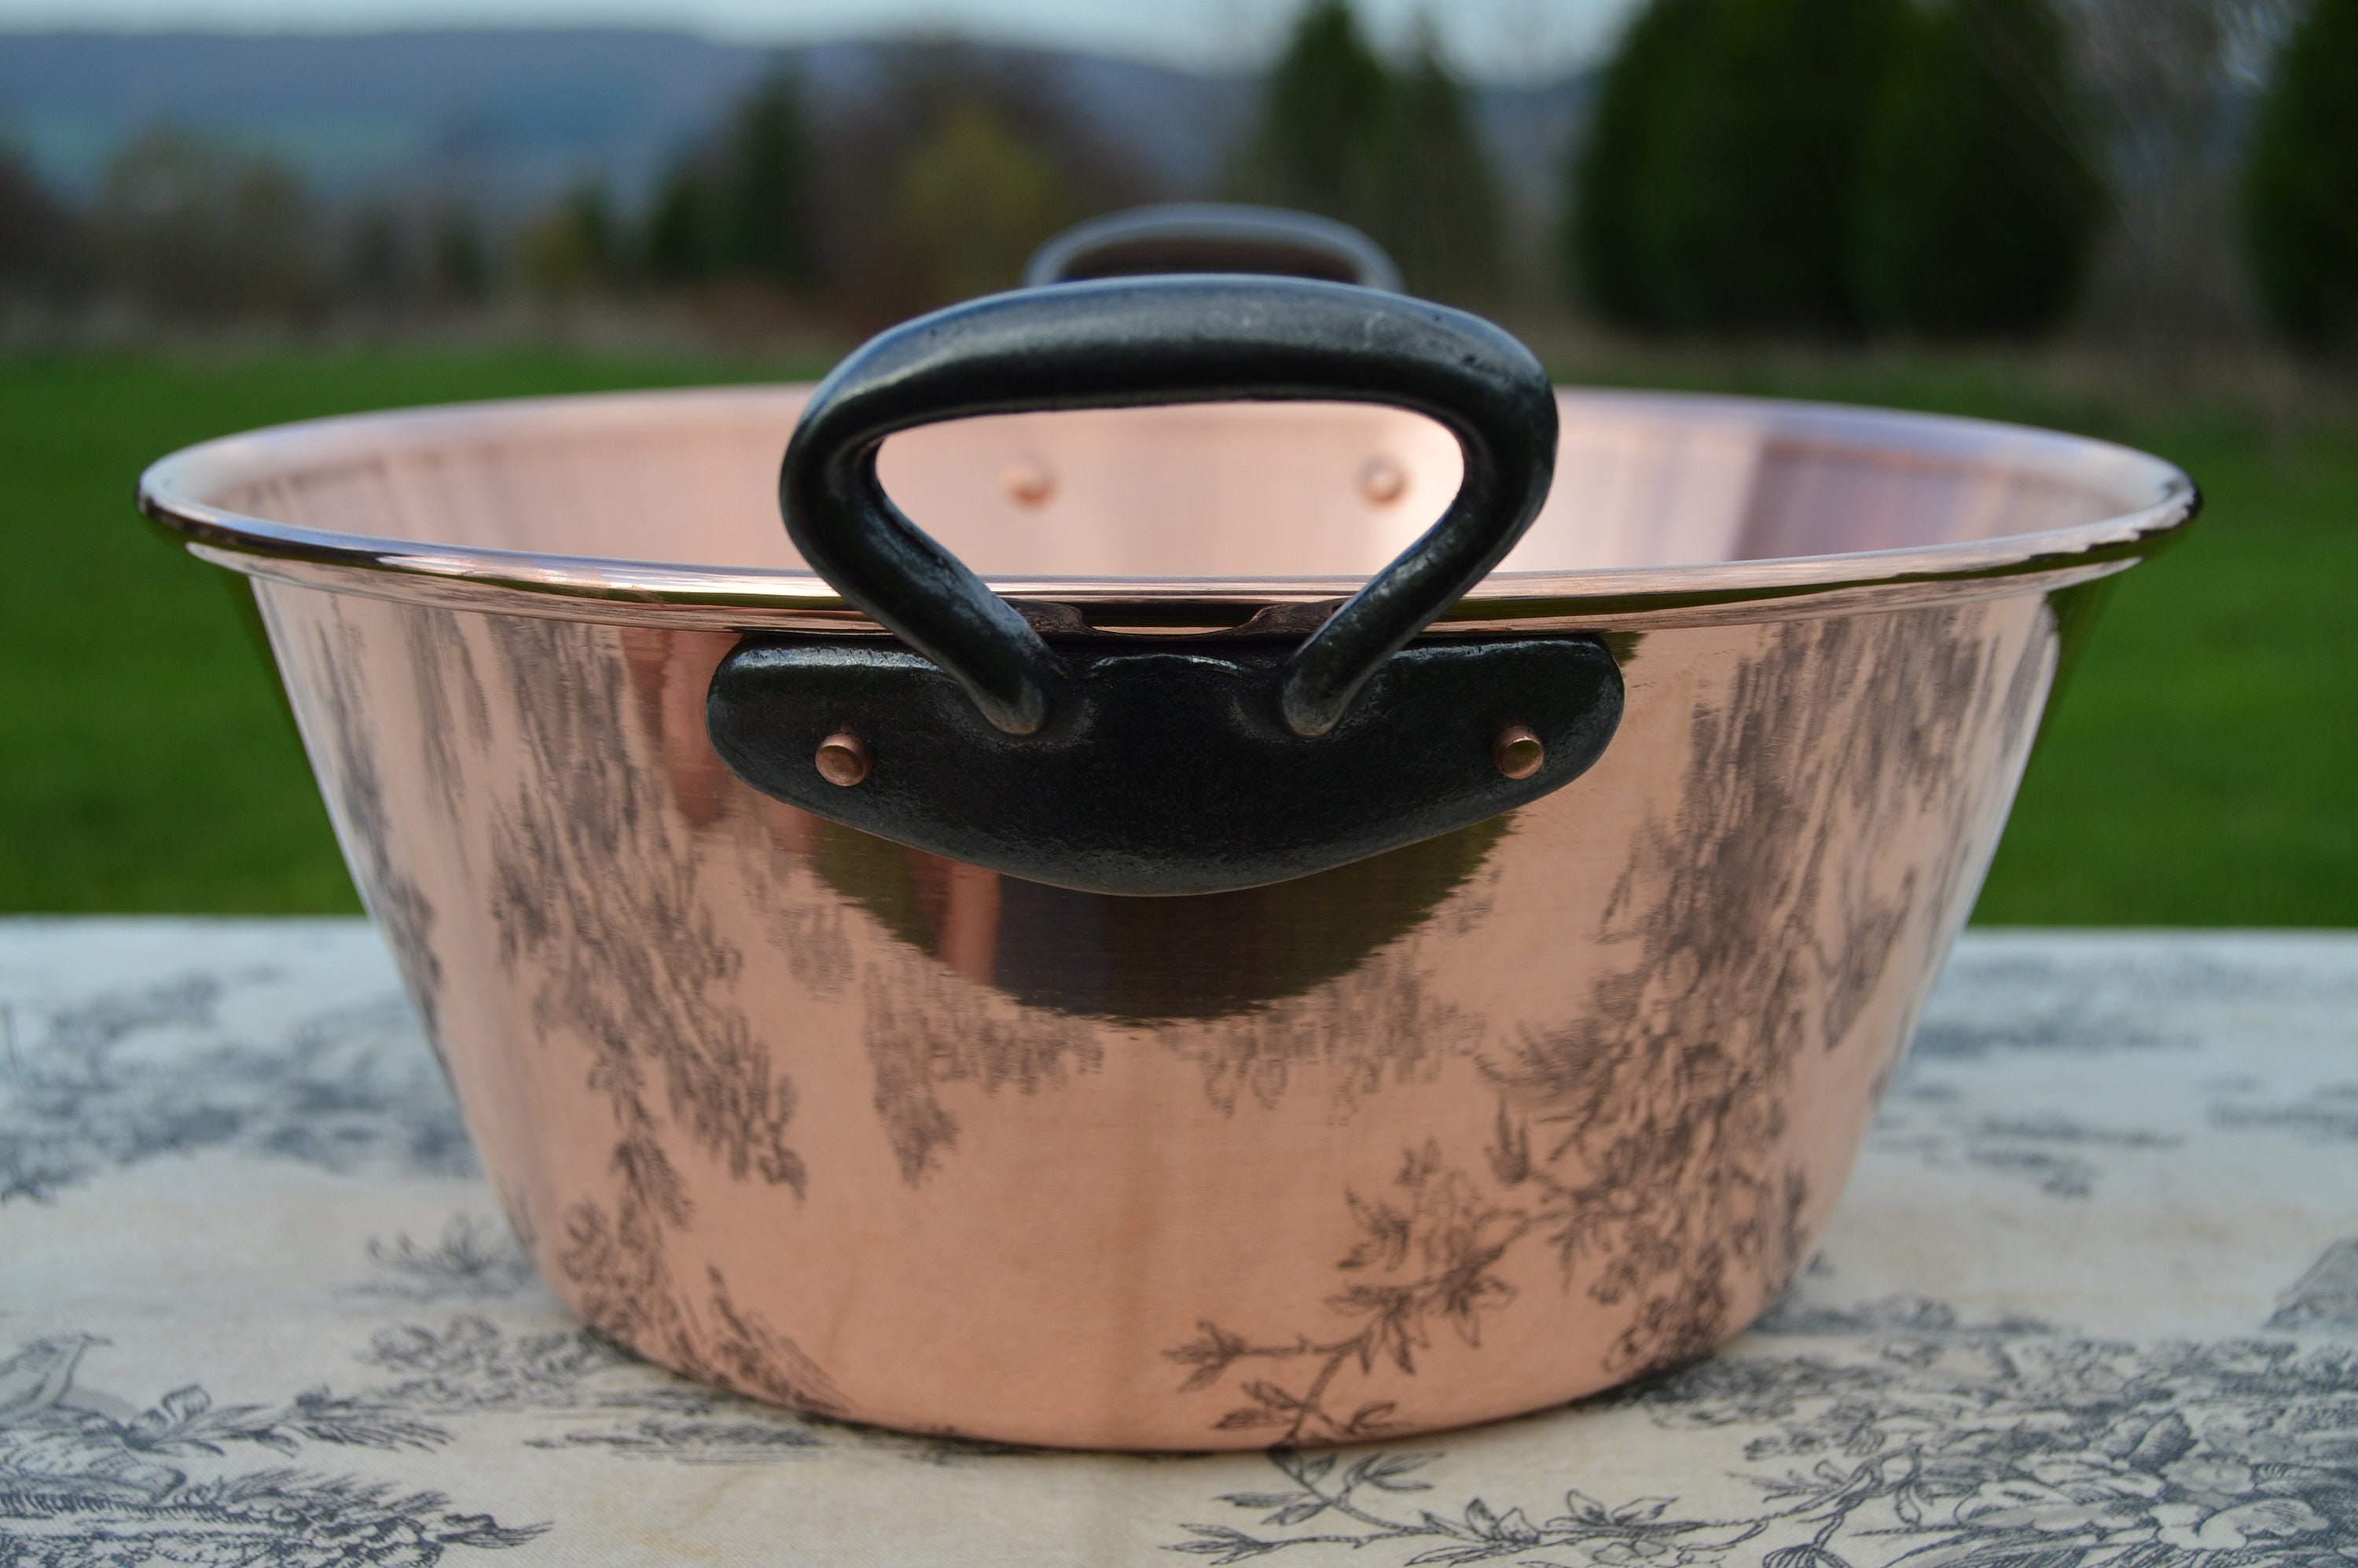 Nouveau Nkc 28 cm Copper Jam Pan de Normandy Kitchen Jelly 28cm 11 Rolled Top Iron Handles New Coppe